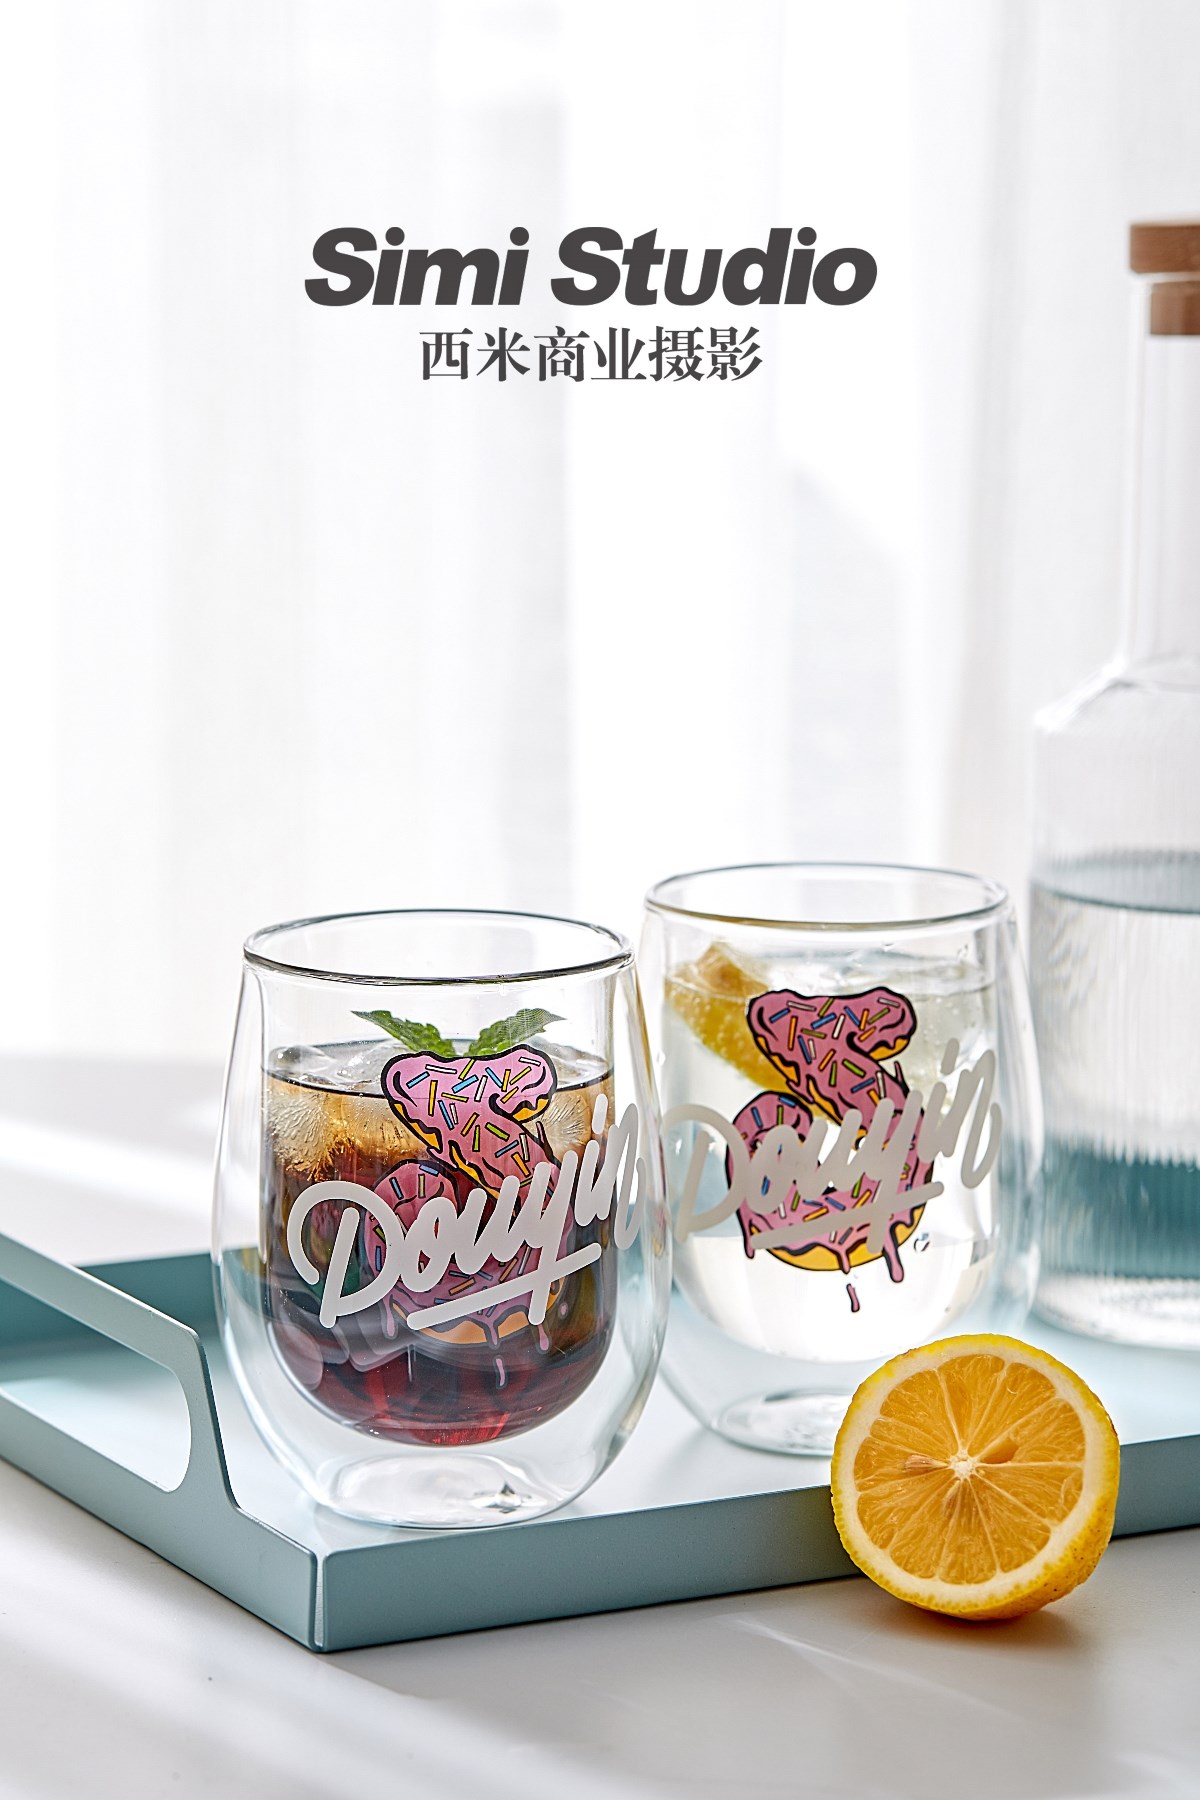 双层玻璃杯拍摄 产品摄影 电商摄影 淘宝摄影 北京西米商业摄影